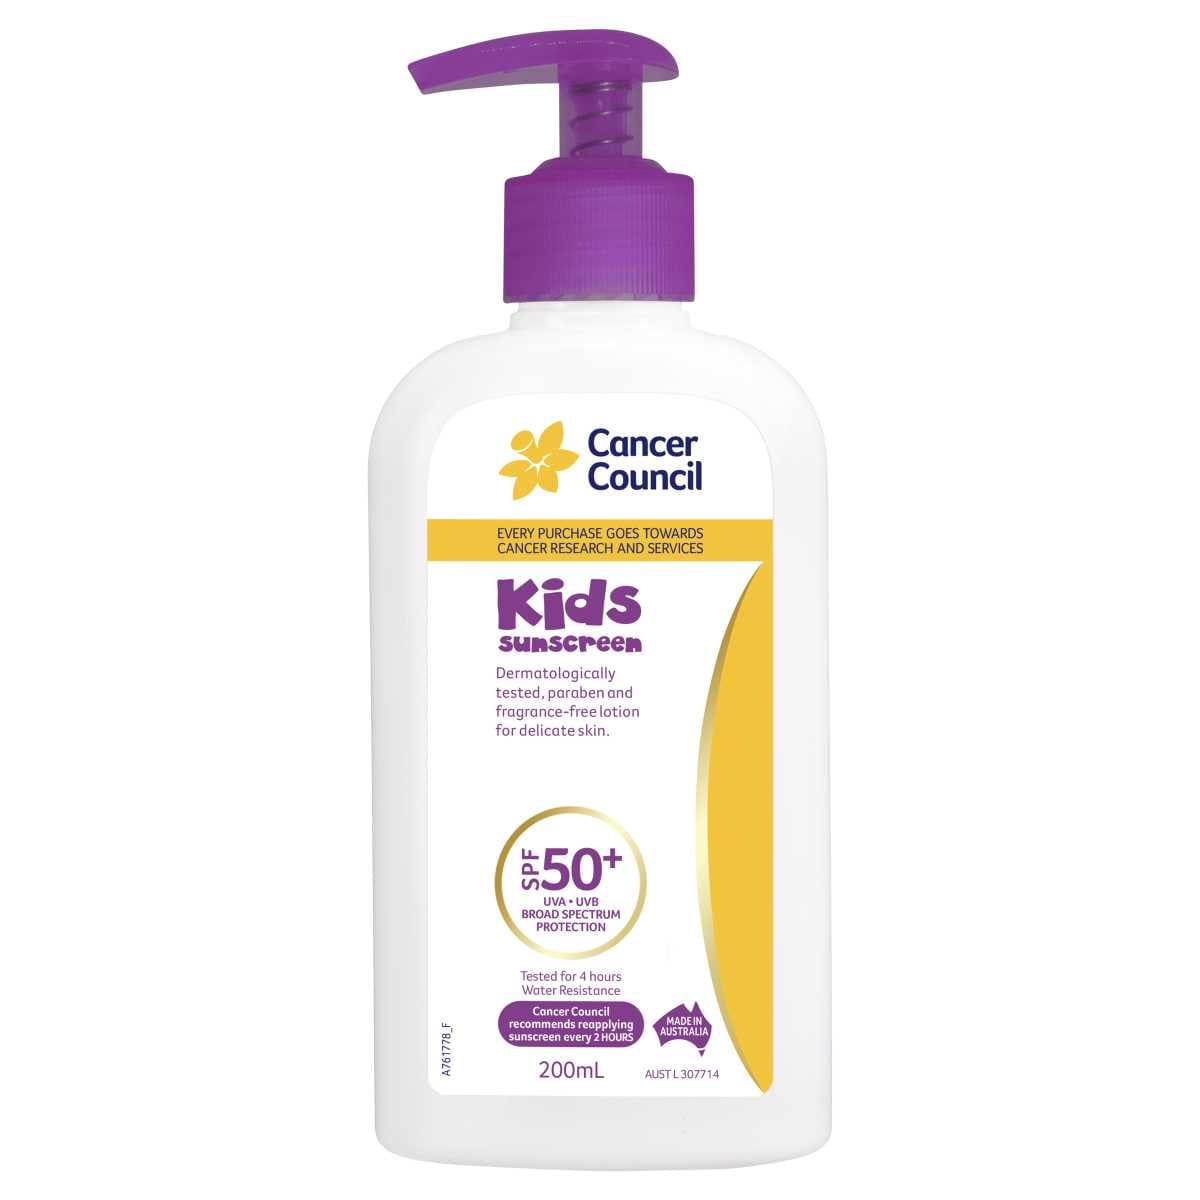 Cancer Council Sunscreen Kids SPF50+ 200ml